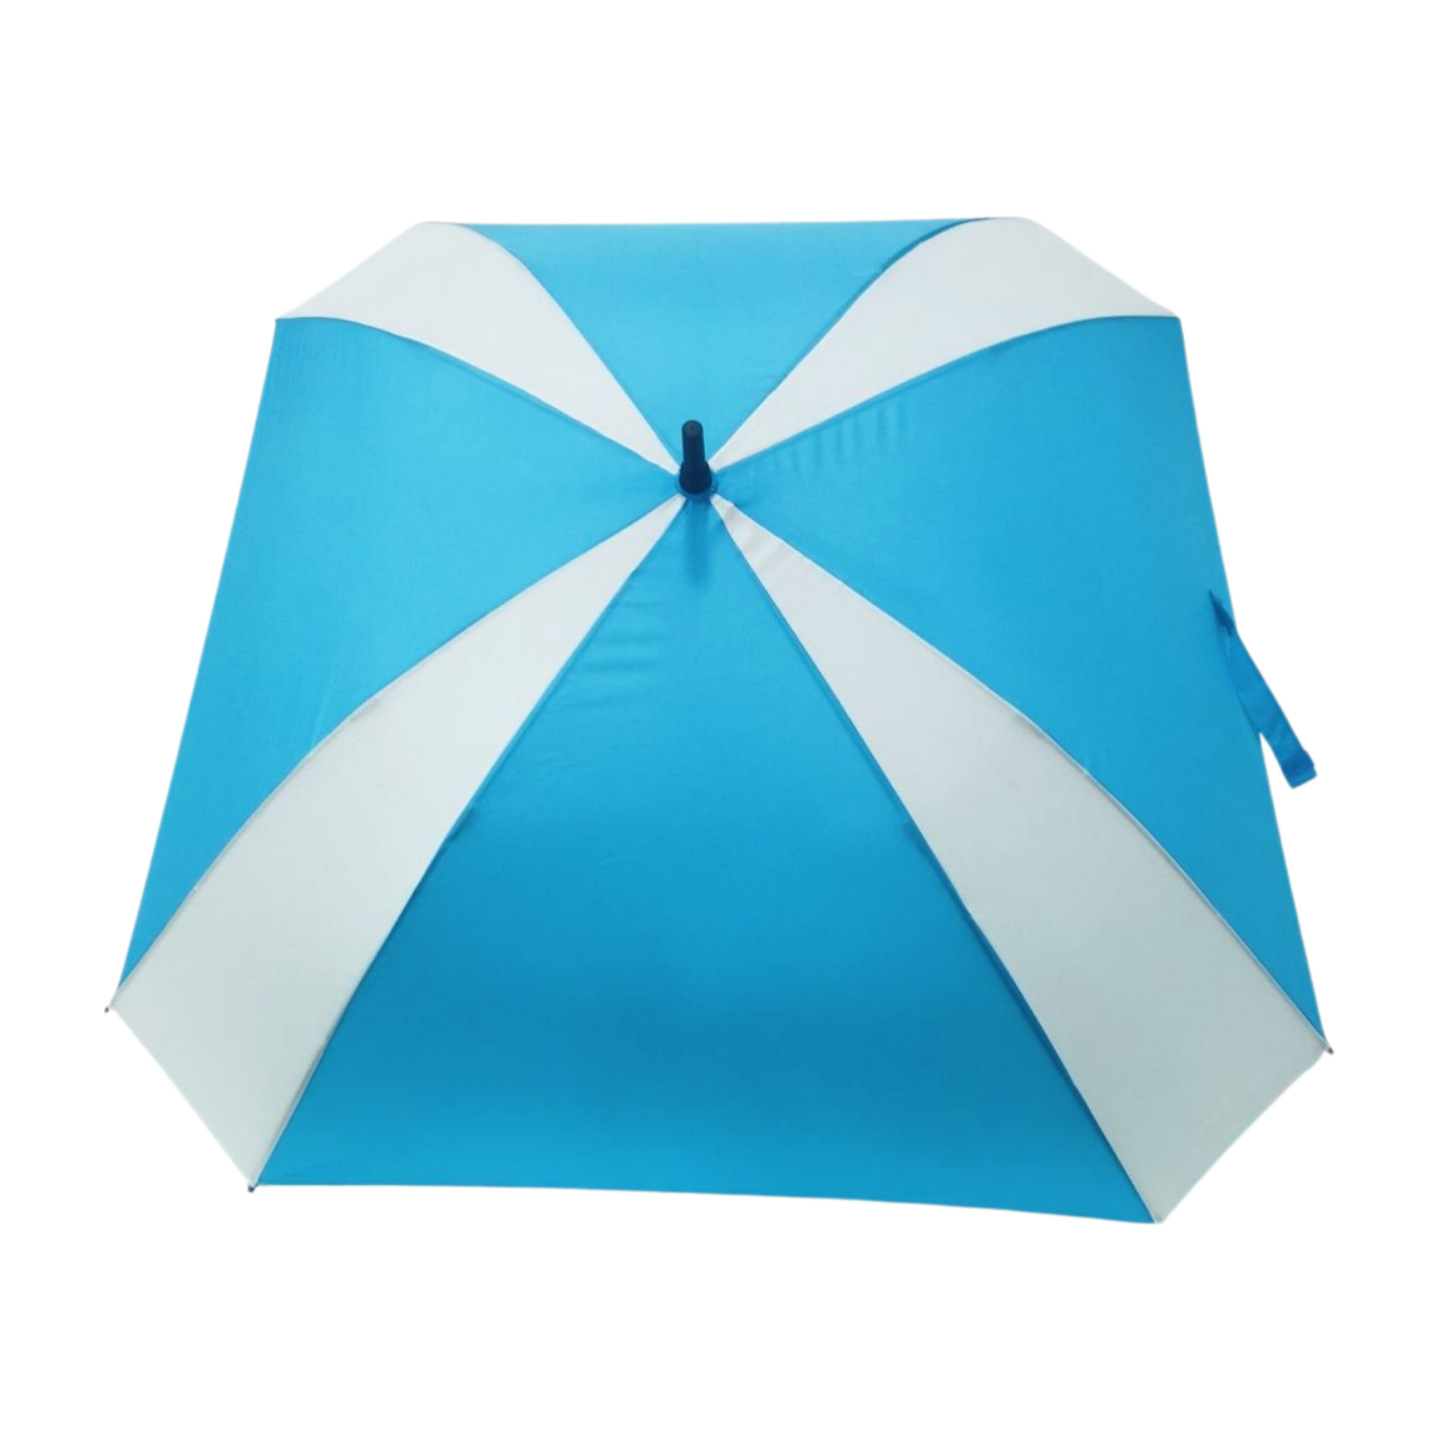 https://www.hodaumbrella.com/pinchless-squa…-golf-umbrella-product/